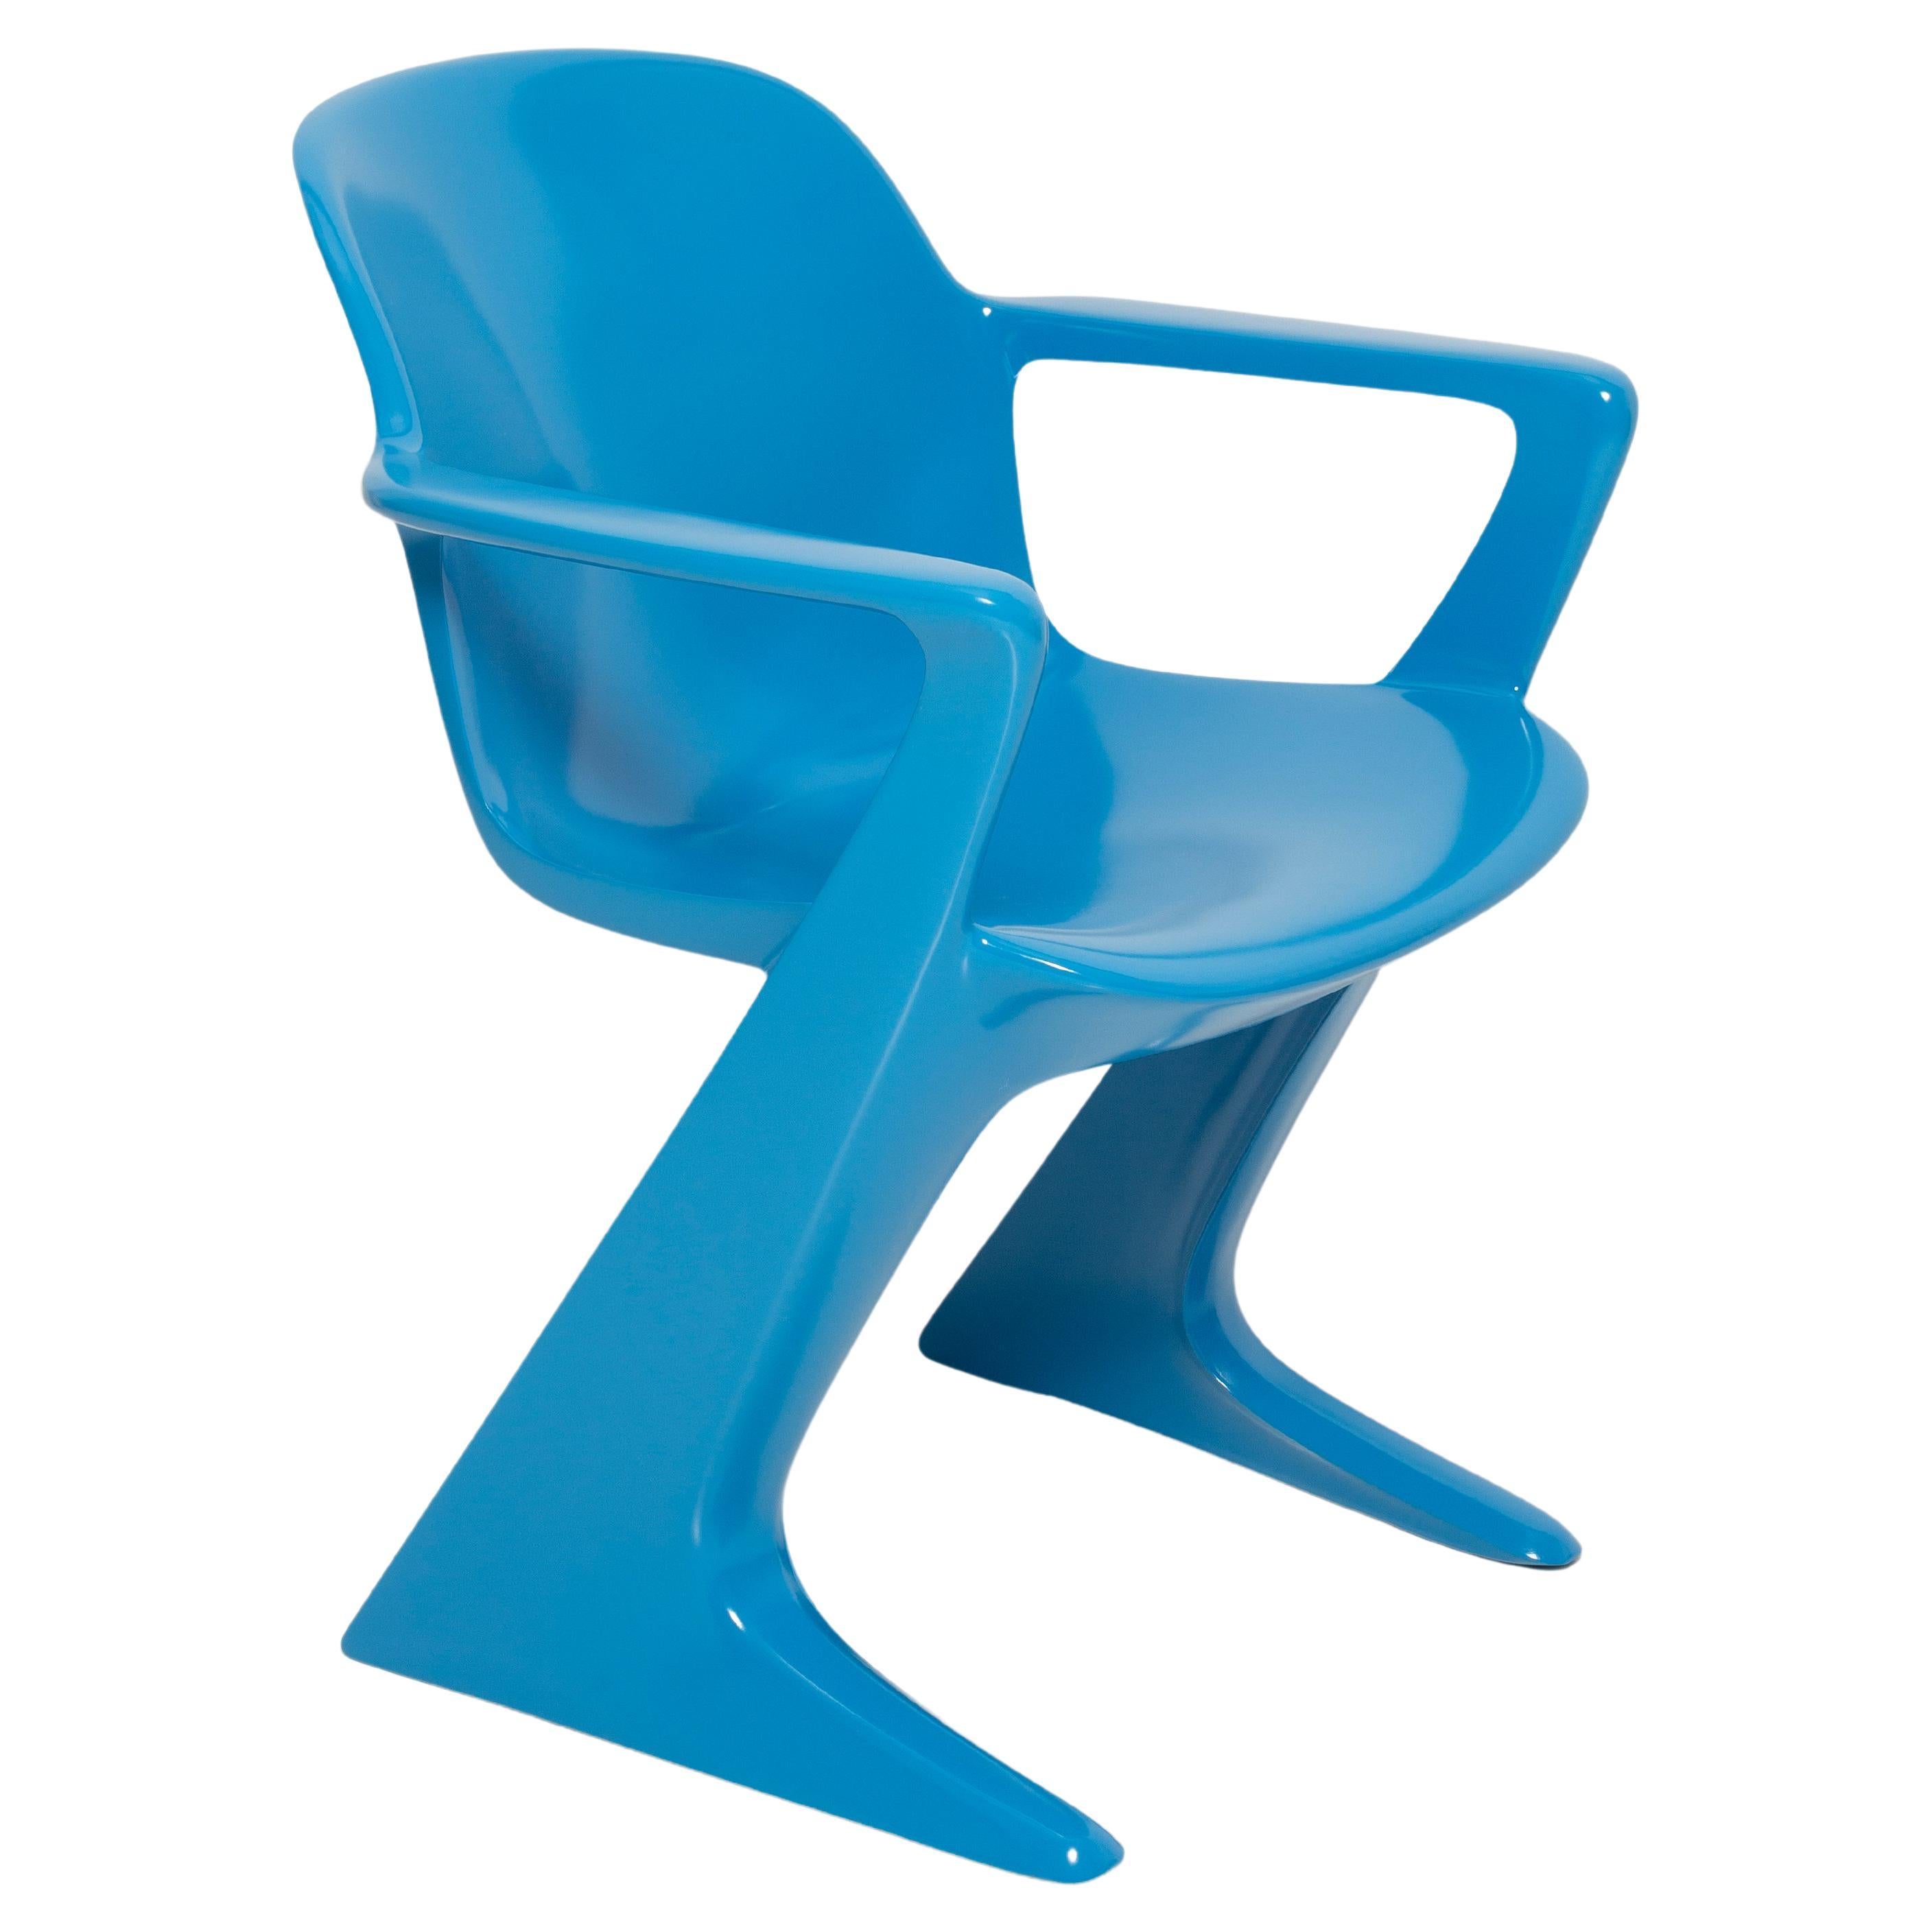 Blauer Kangaroo-Stuhl entworfen von Ernst Moeckl, Deutschland, 1968